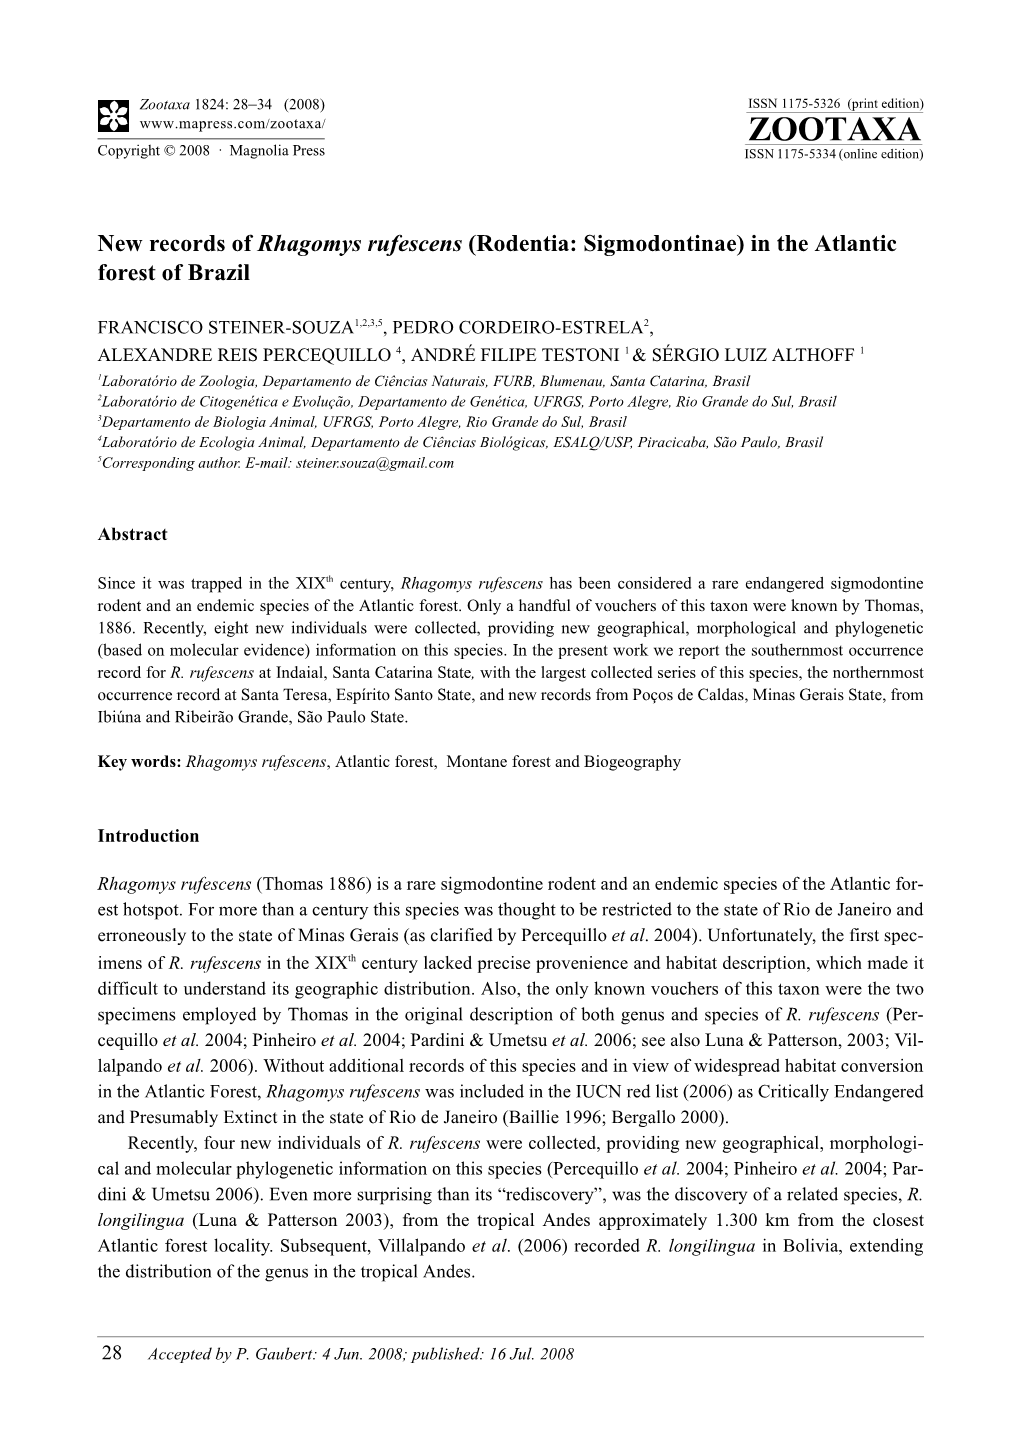 Zootaxa, New Records of Rhagomys Rufescens